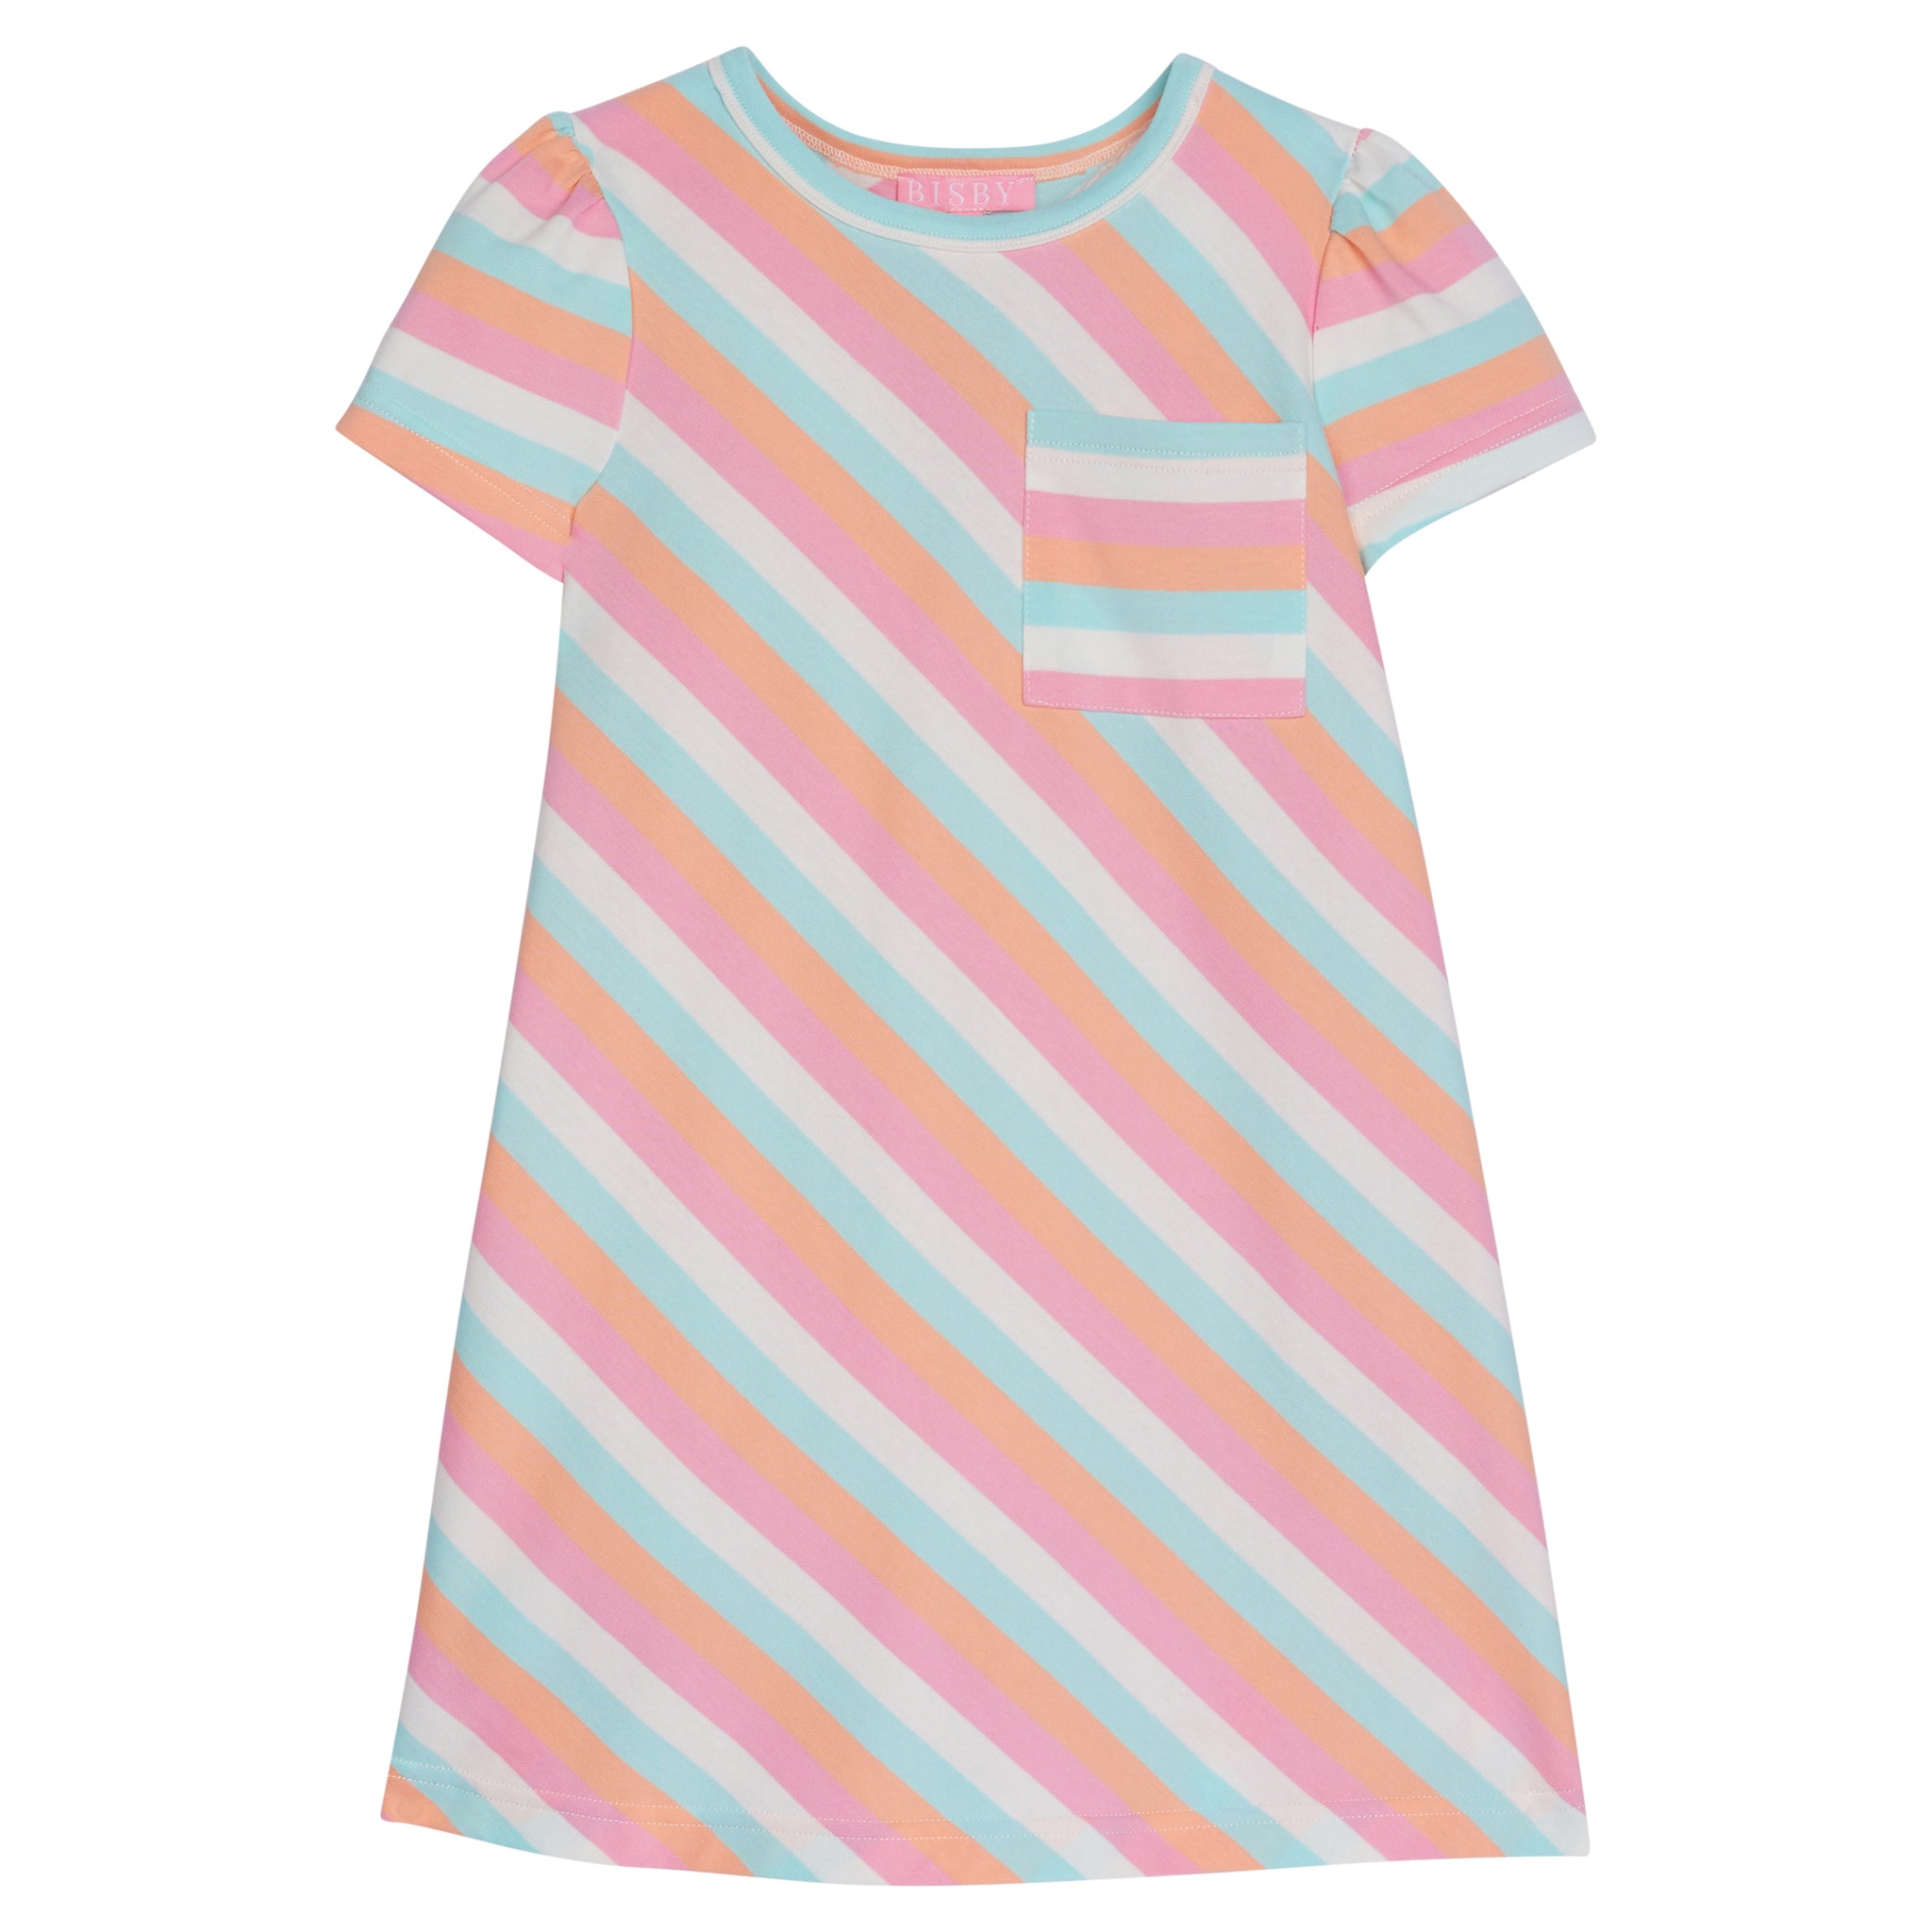 Everyday Dress - Sherbert Stripe